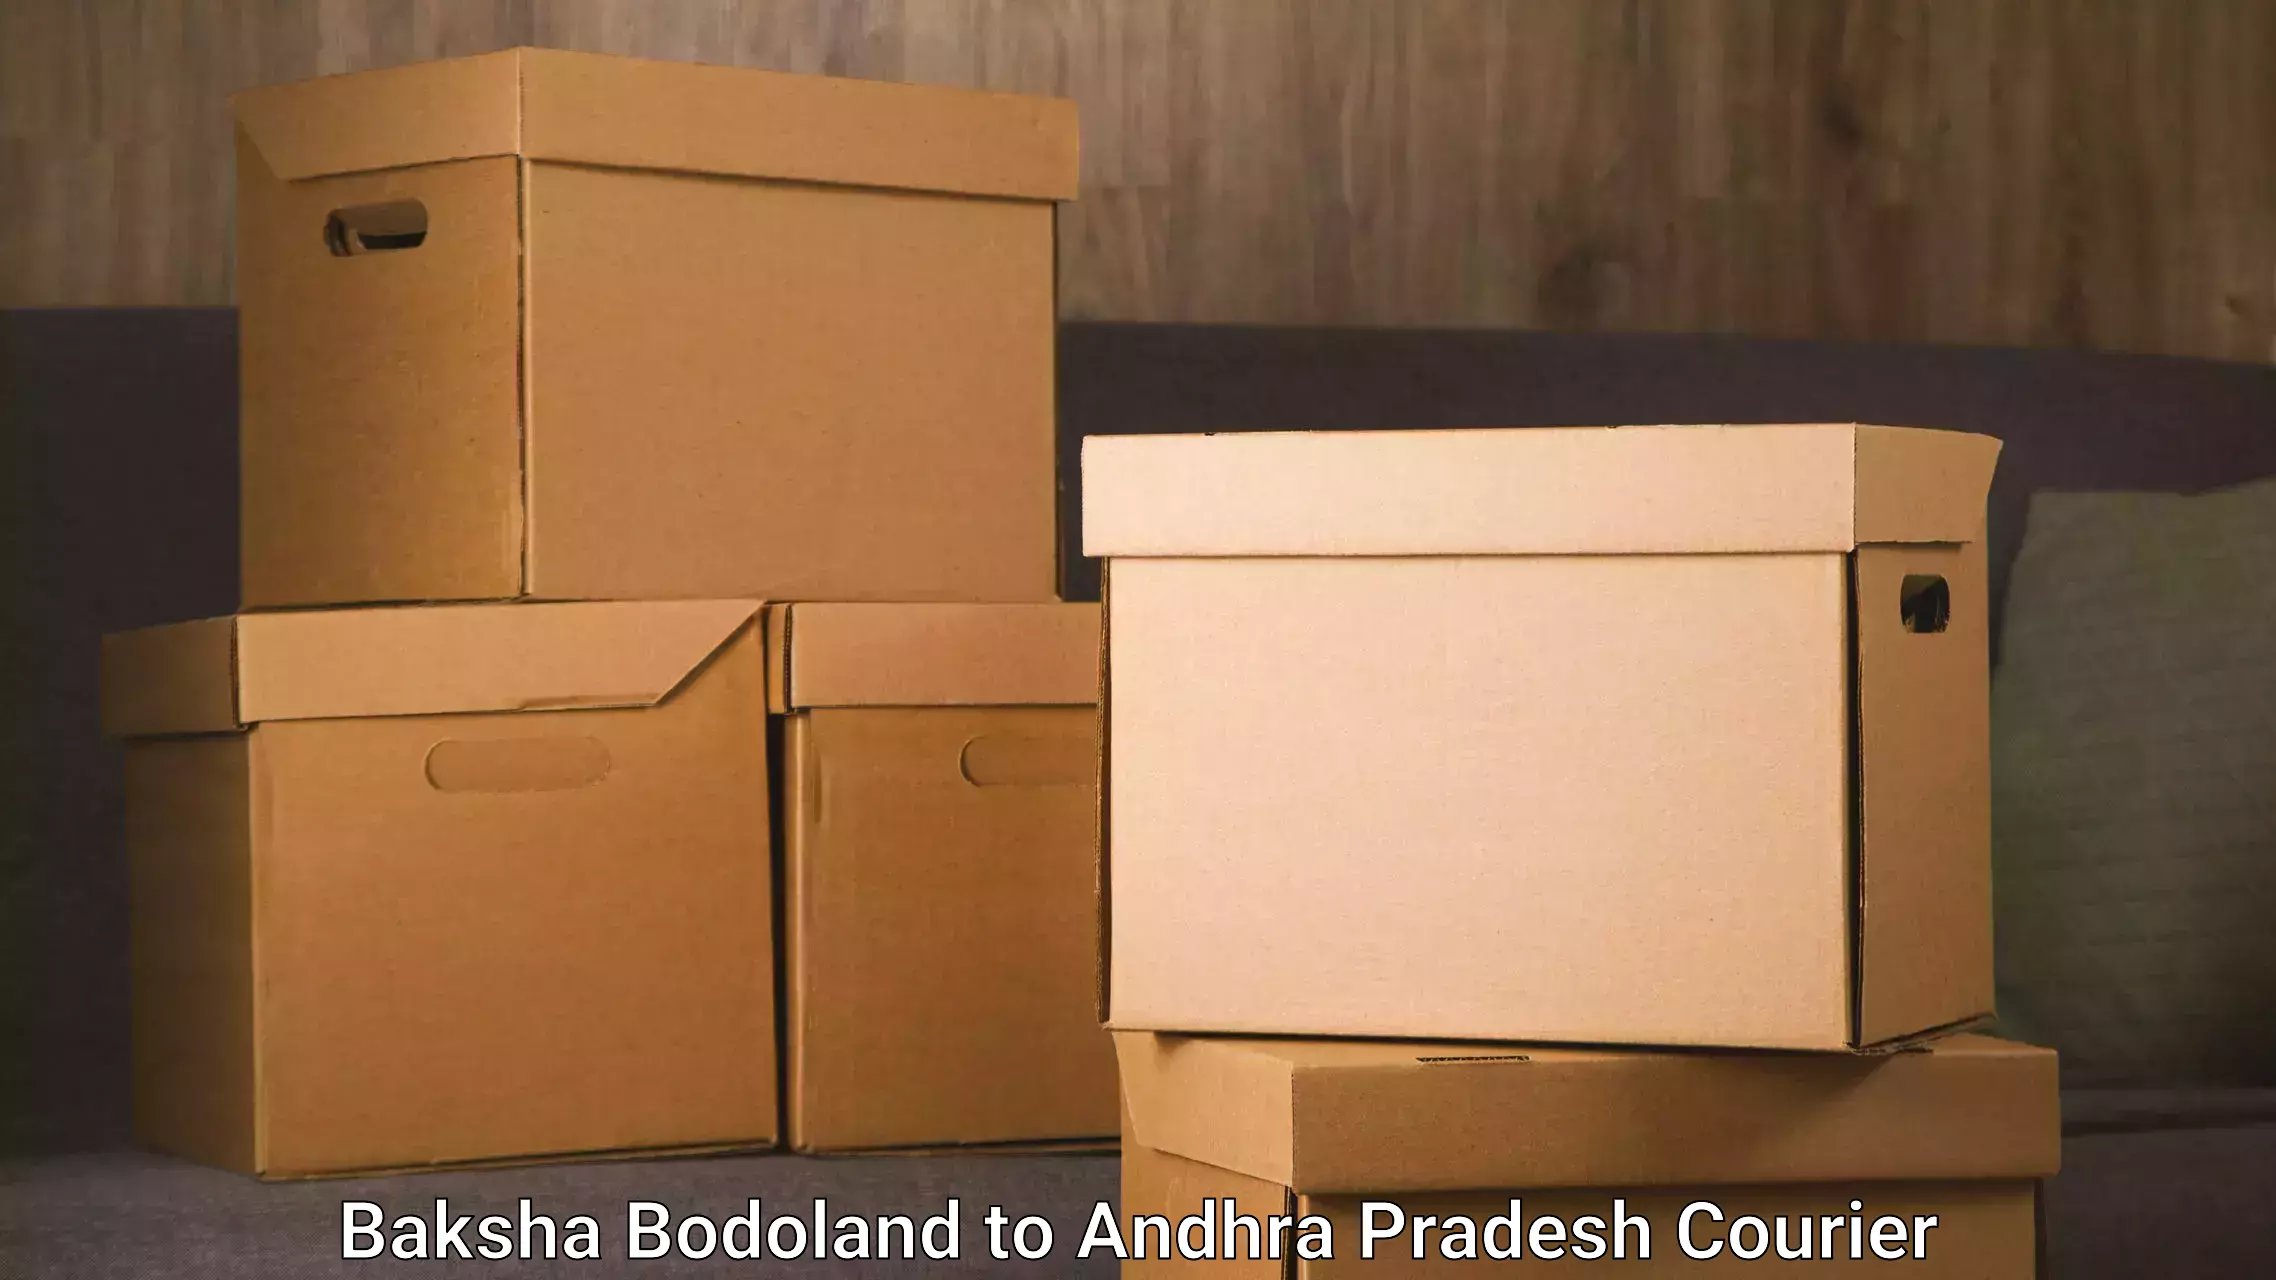 Efficient order fulfillment Baksha Bodoland to Vempalli